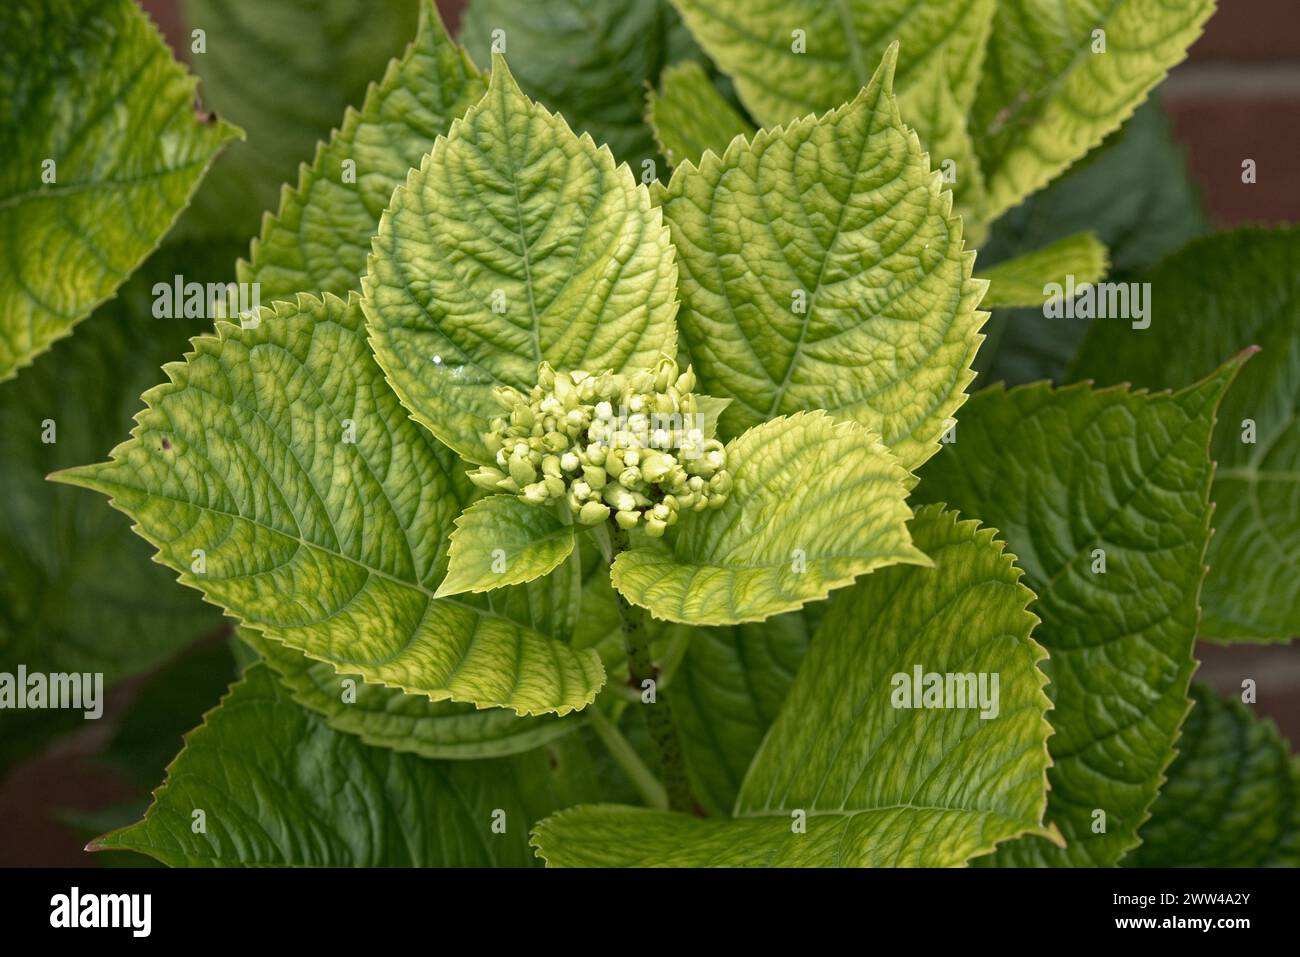 La chaux a induit une carence en fer causant un jaunissement et une chlorose sur les feuilles d'une Hydrangea macrophylla dans le bourgeon floral, Berkshire, août Banque D'Images